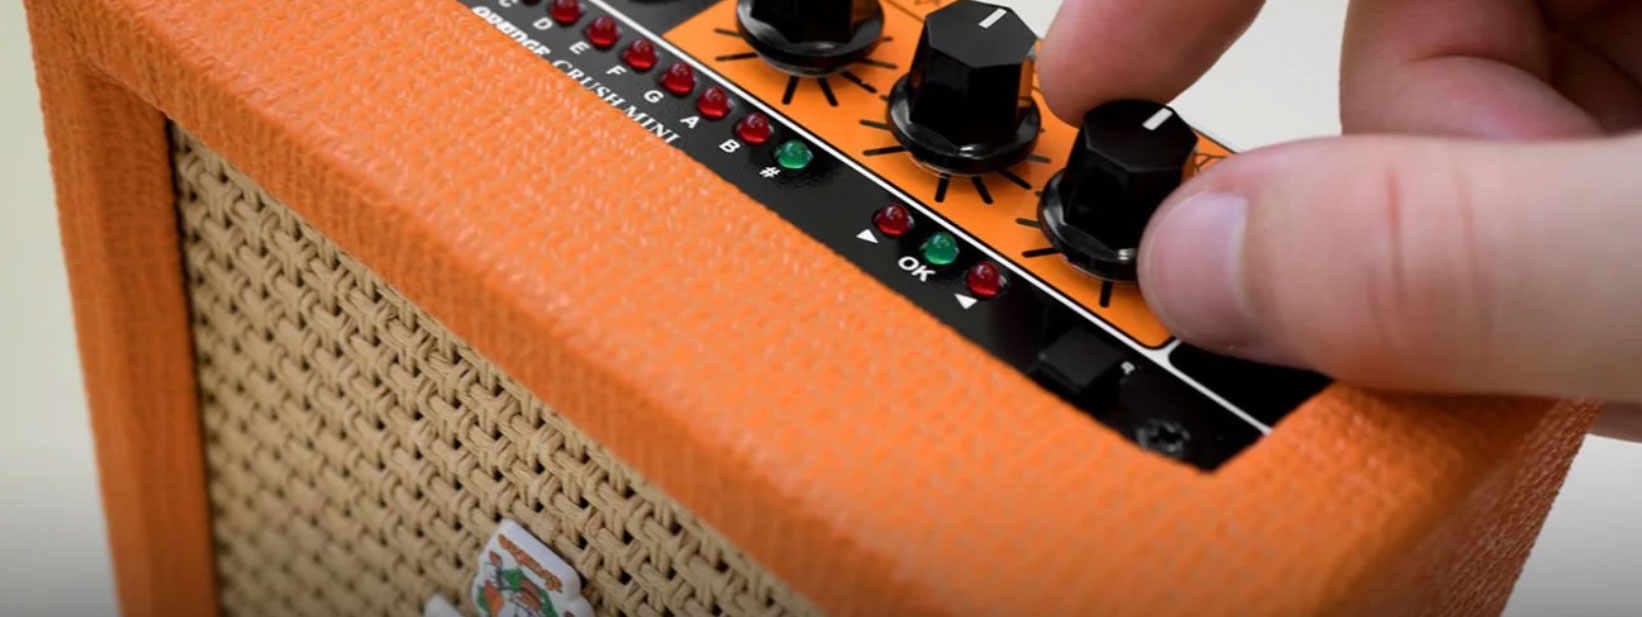 Orange Crush Mini 3w - Mini guitar amp - Variation 3